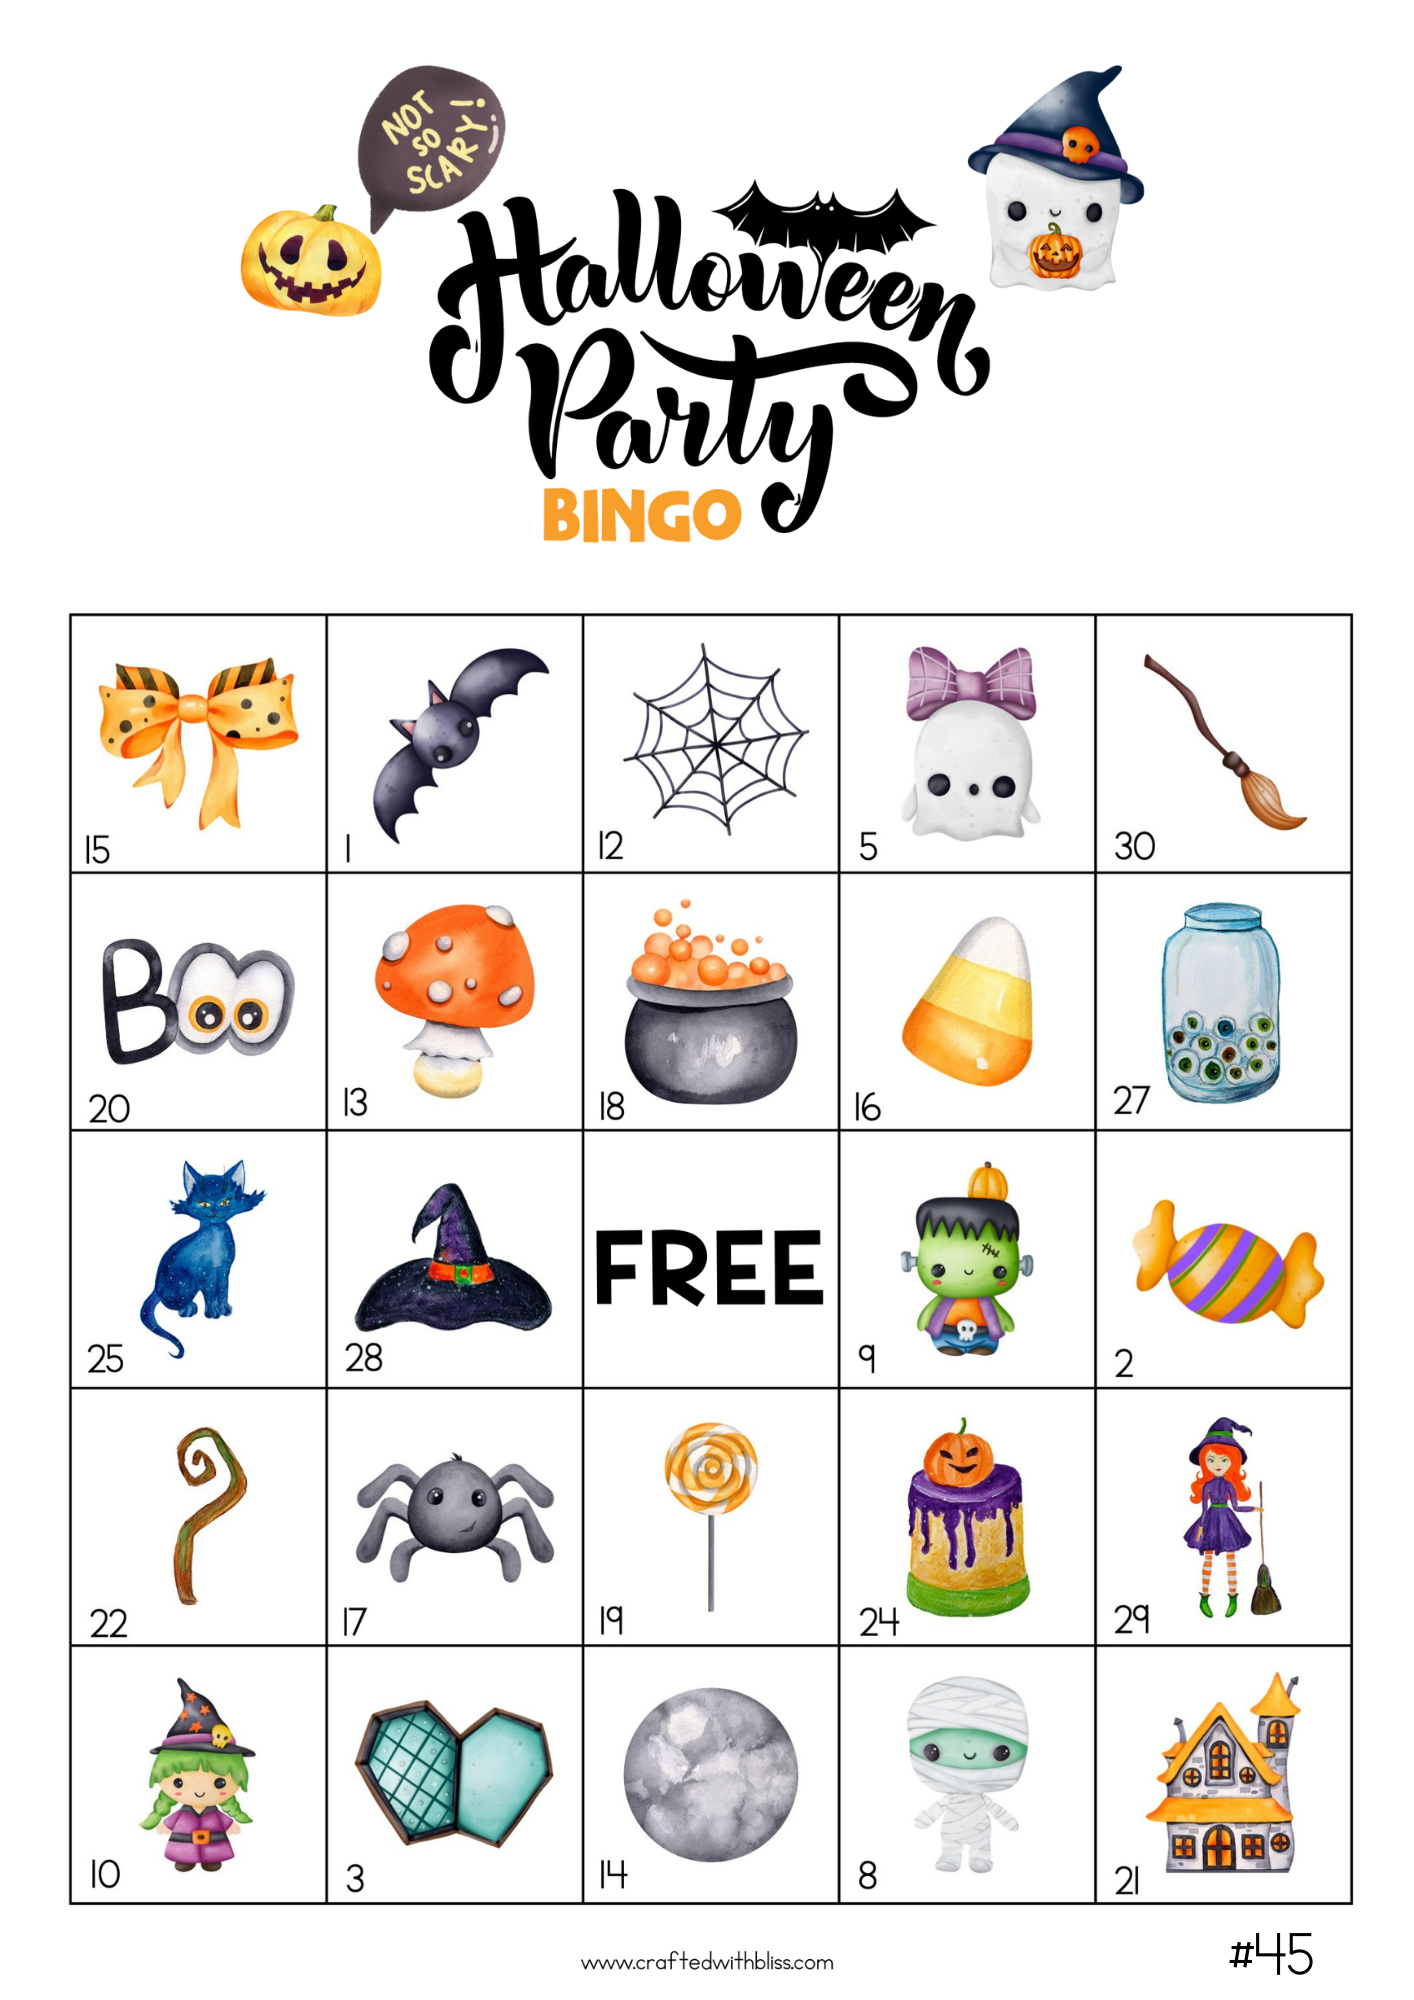 50 Watercolor Halloween Bingo Cards (5x5)